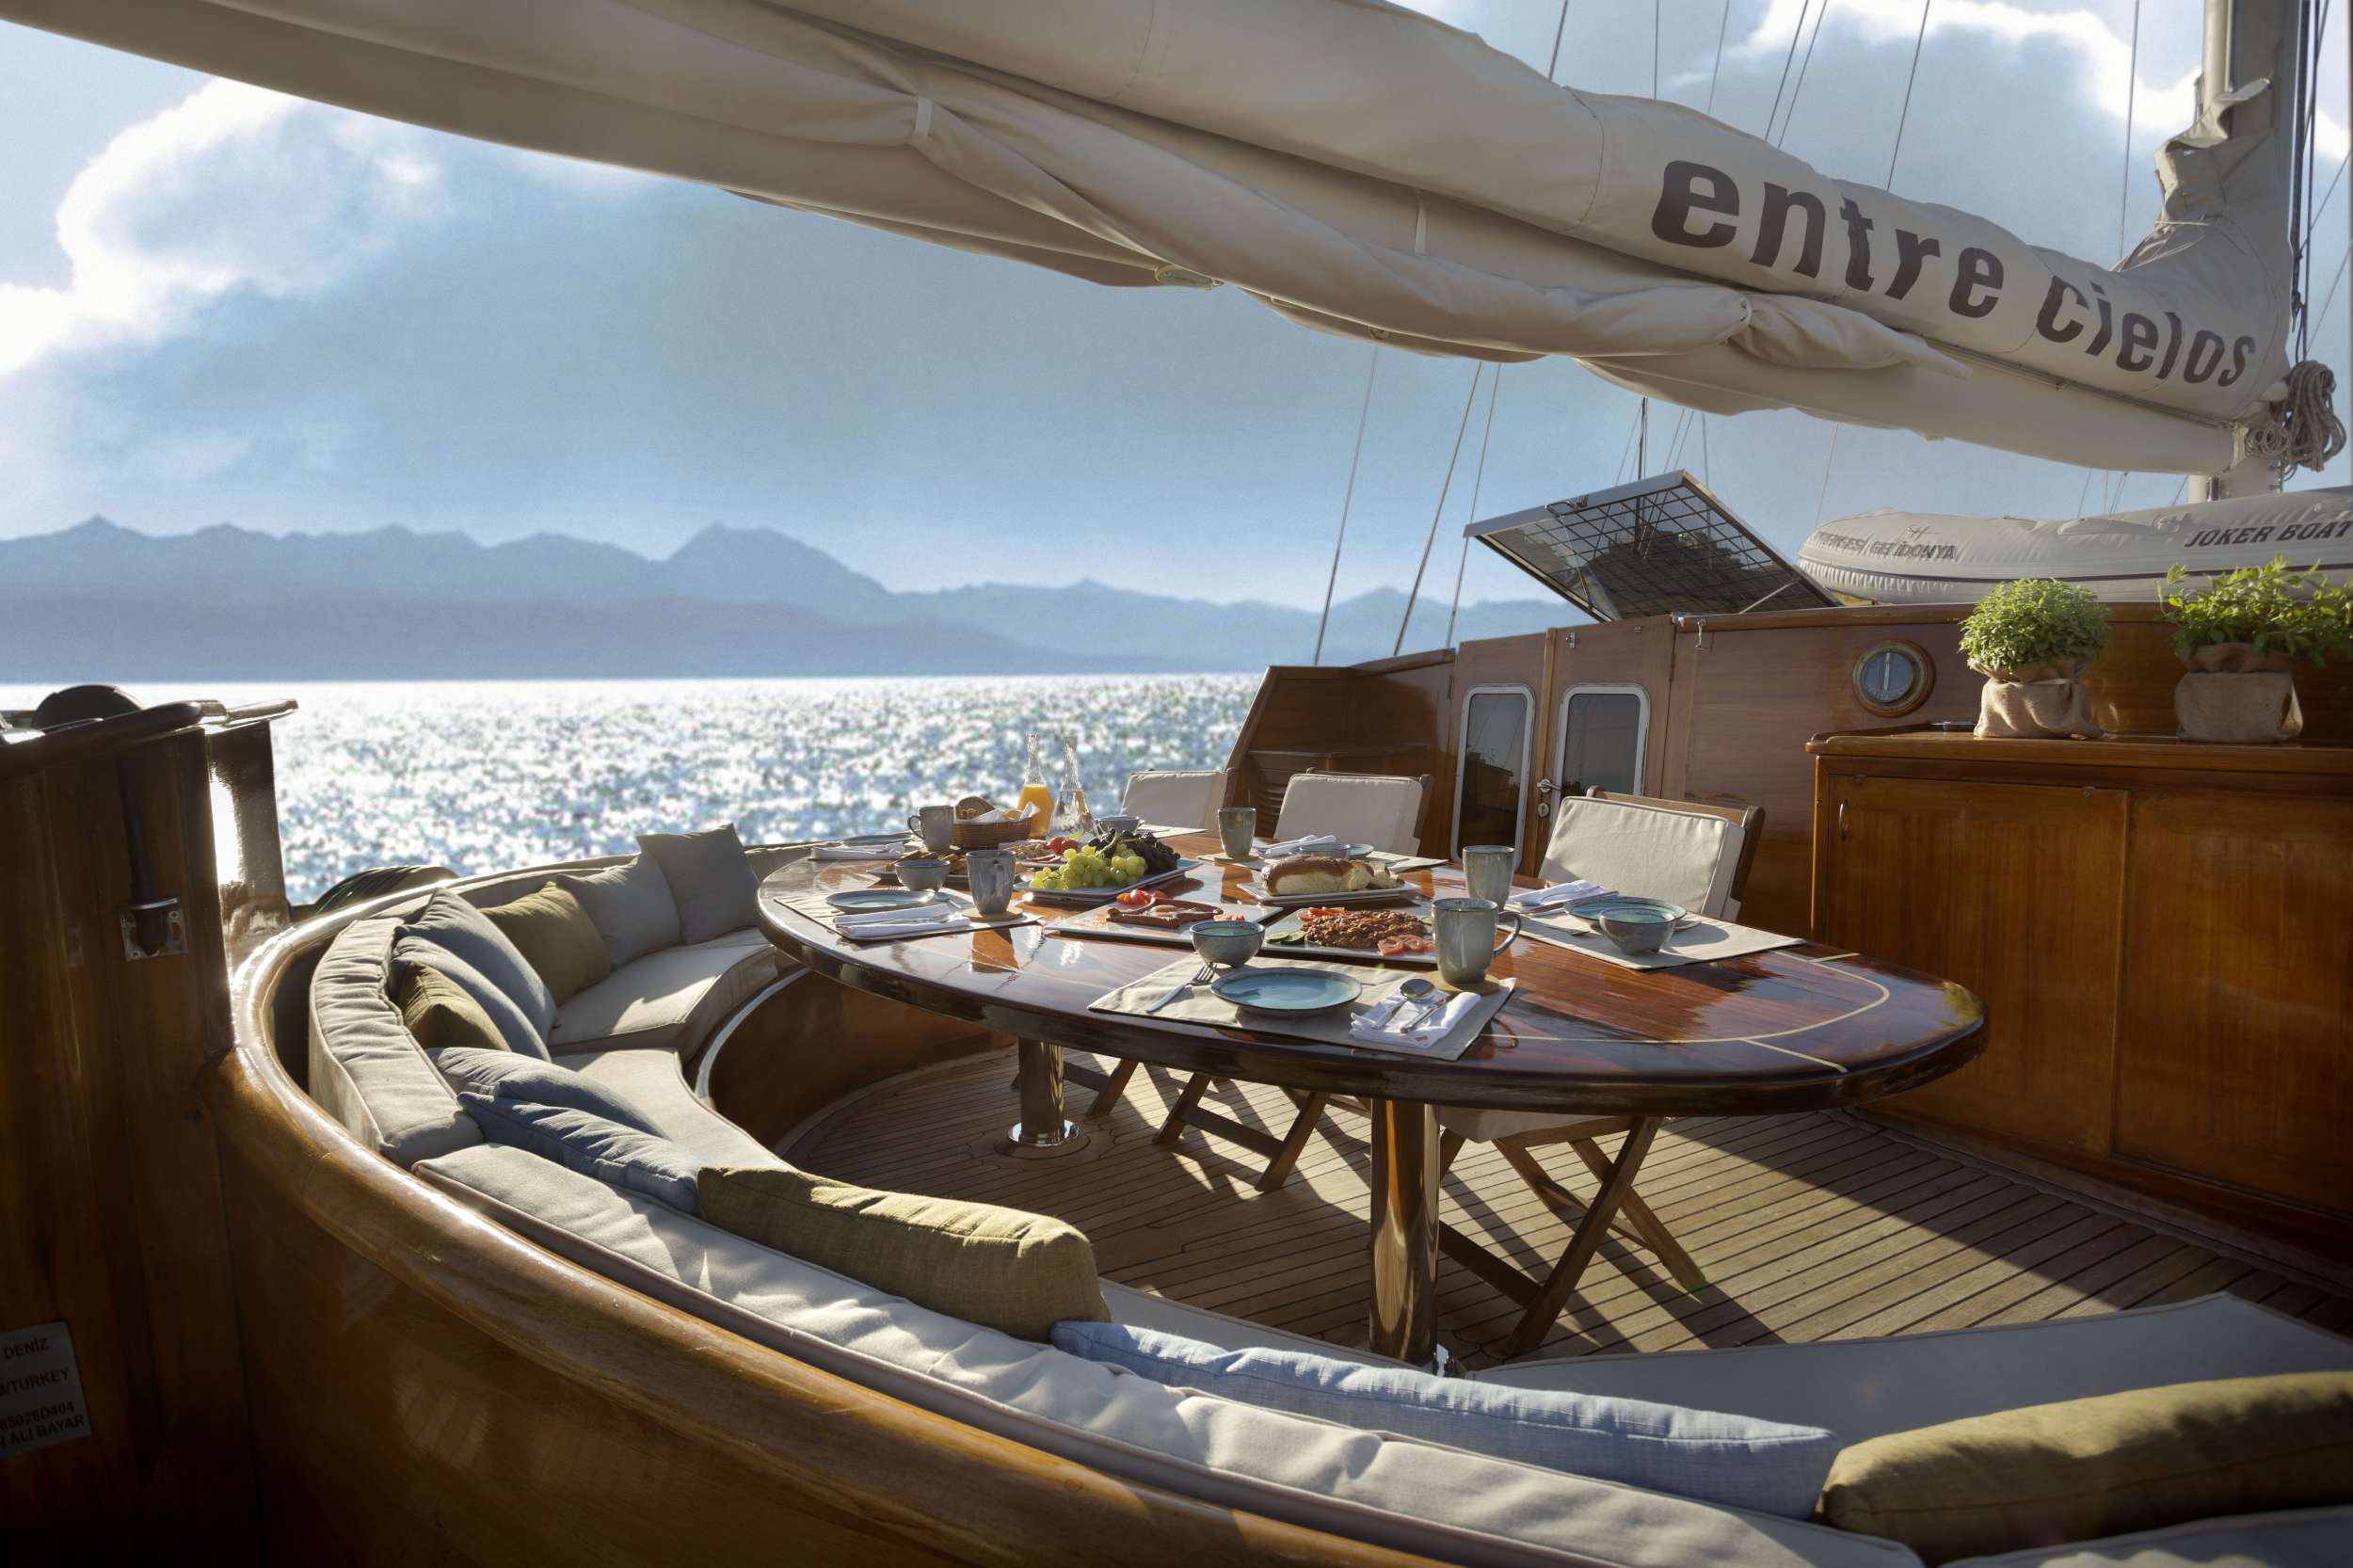 ENTRE CIELOS - Yacht Charter Kassandra & Boat hire in Greece 3